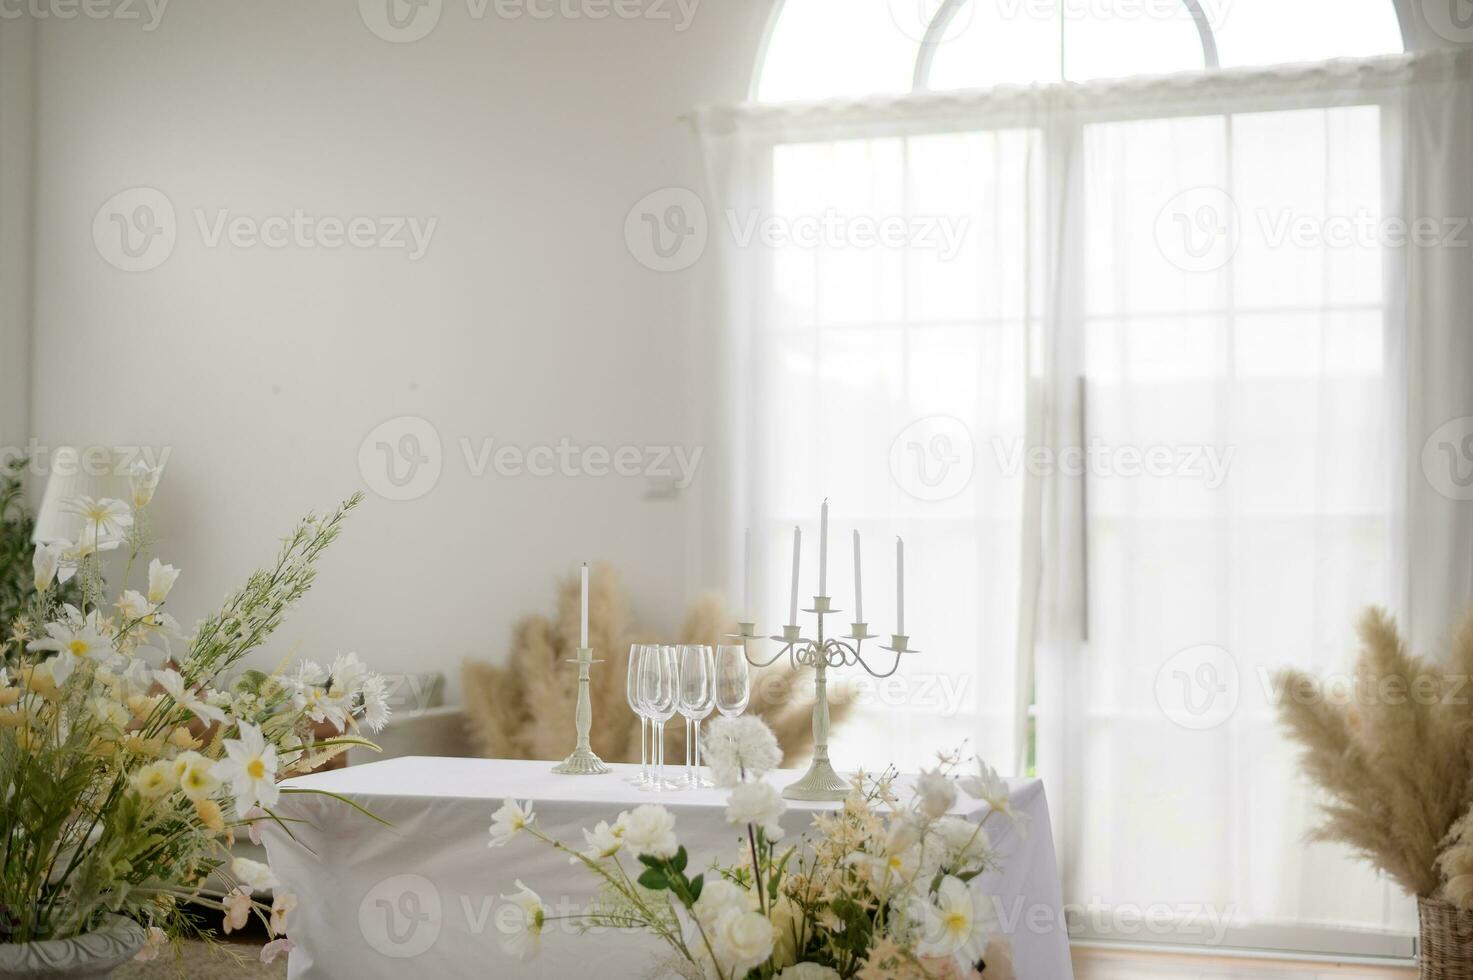 benvenuto per nozze cartello e ricezione tavolo decorato con fiori foto